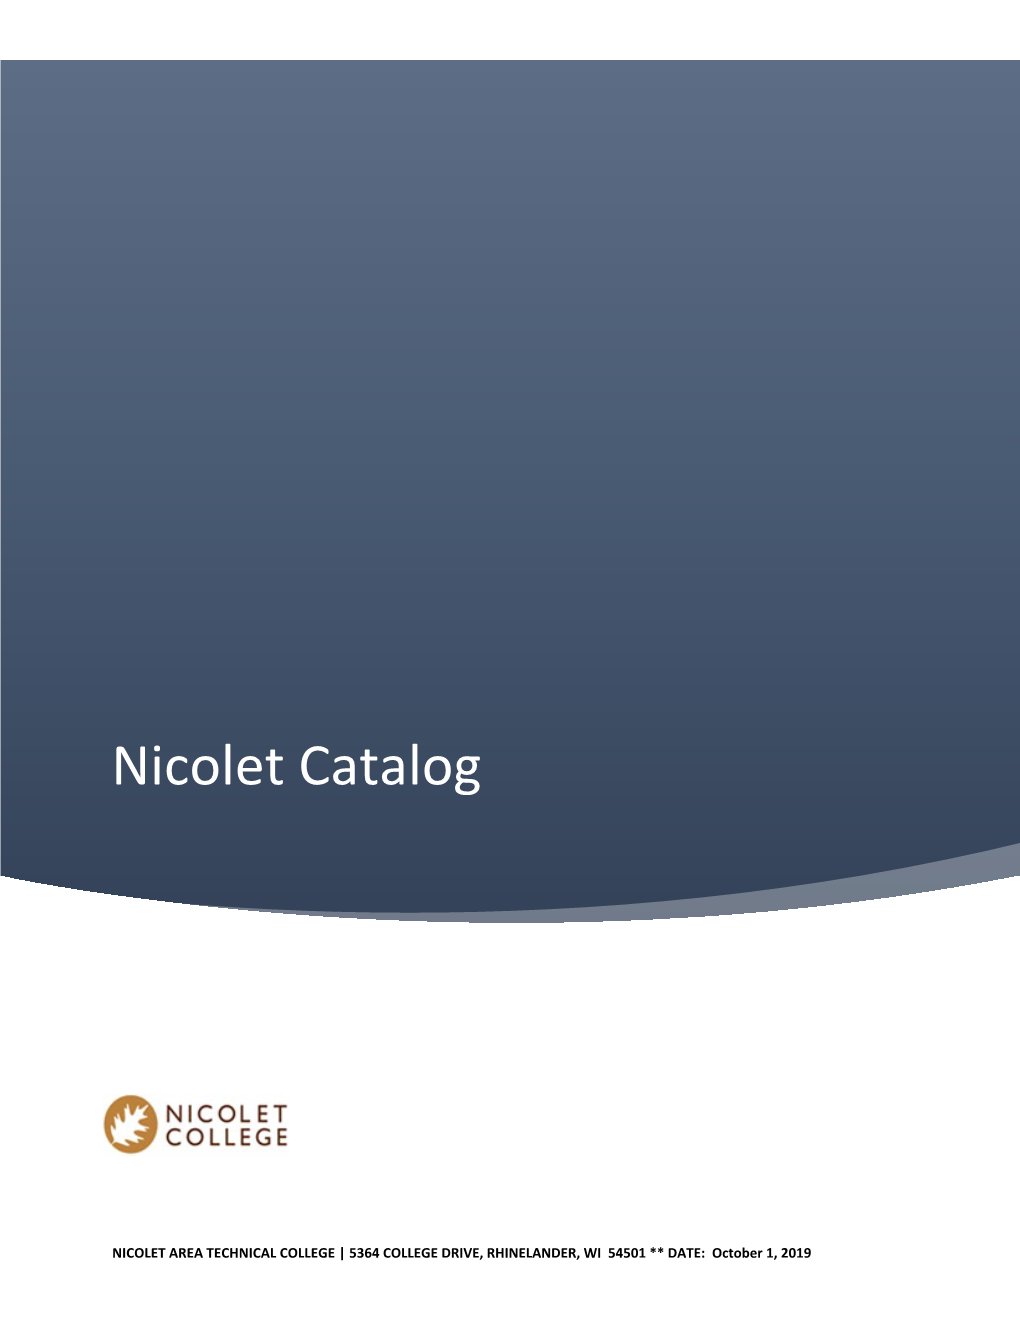 Nicolet College Catalog October 2019.Pdf